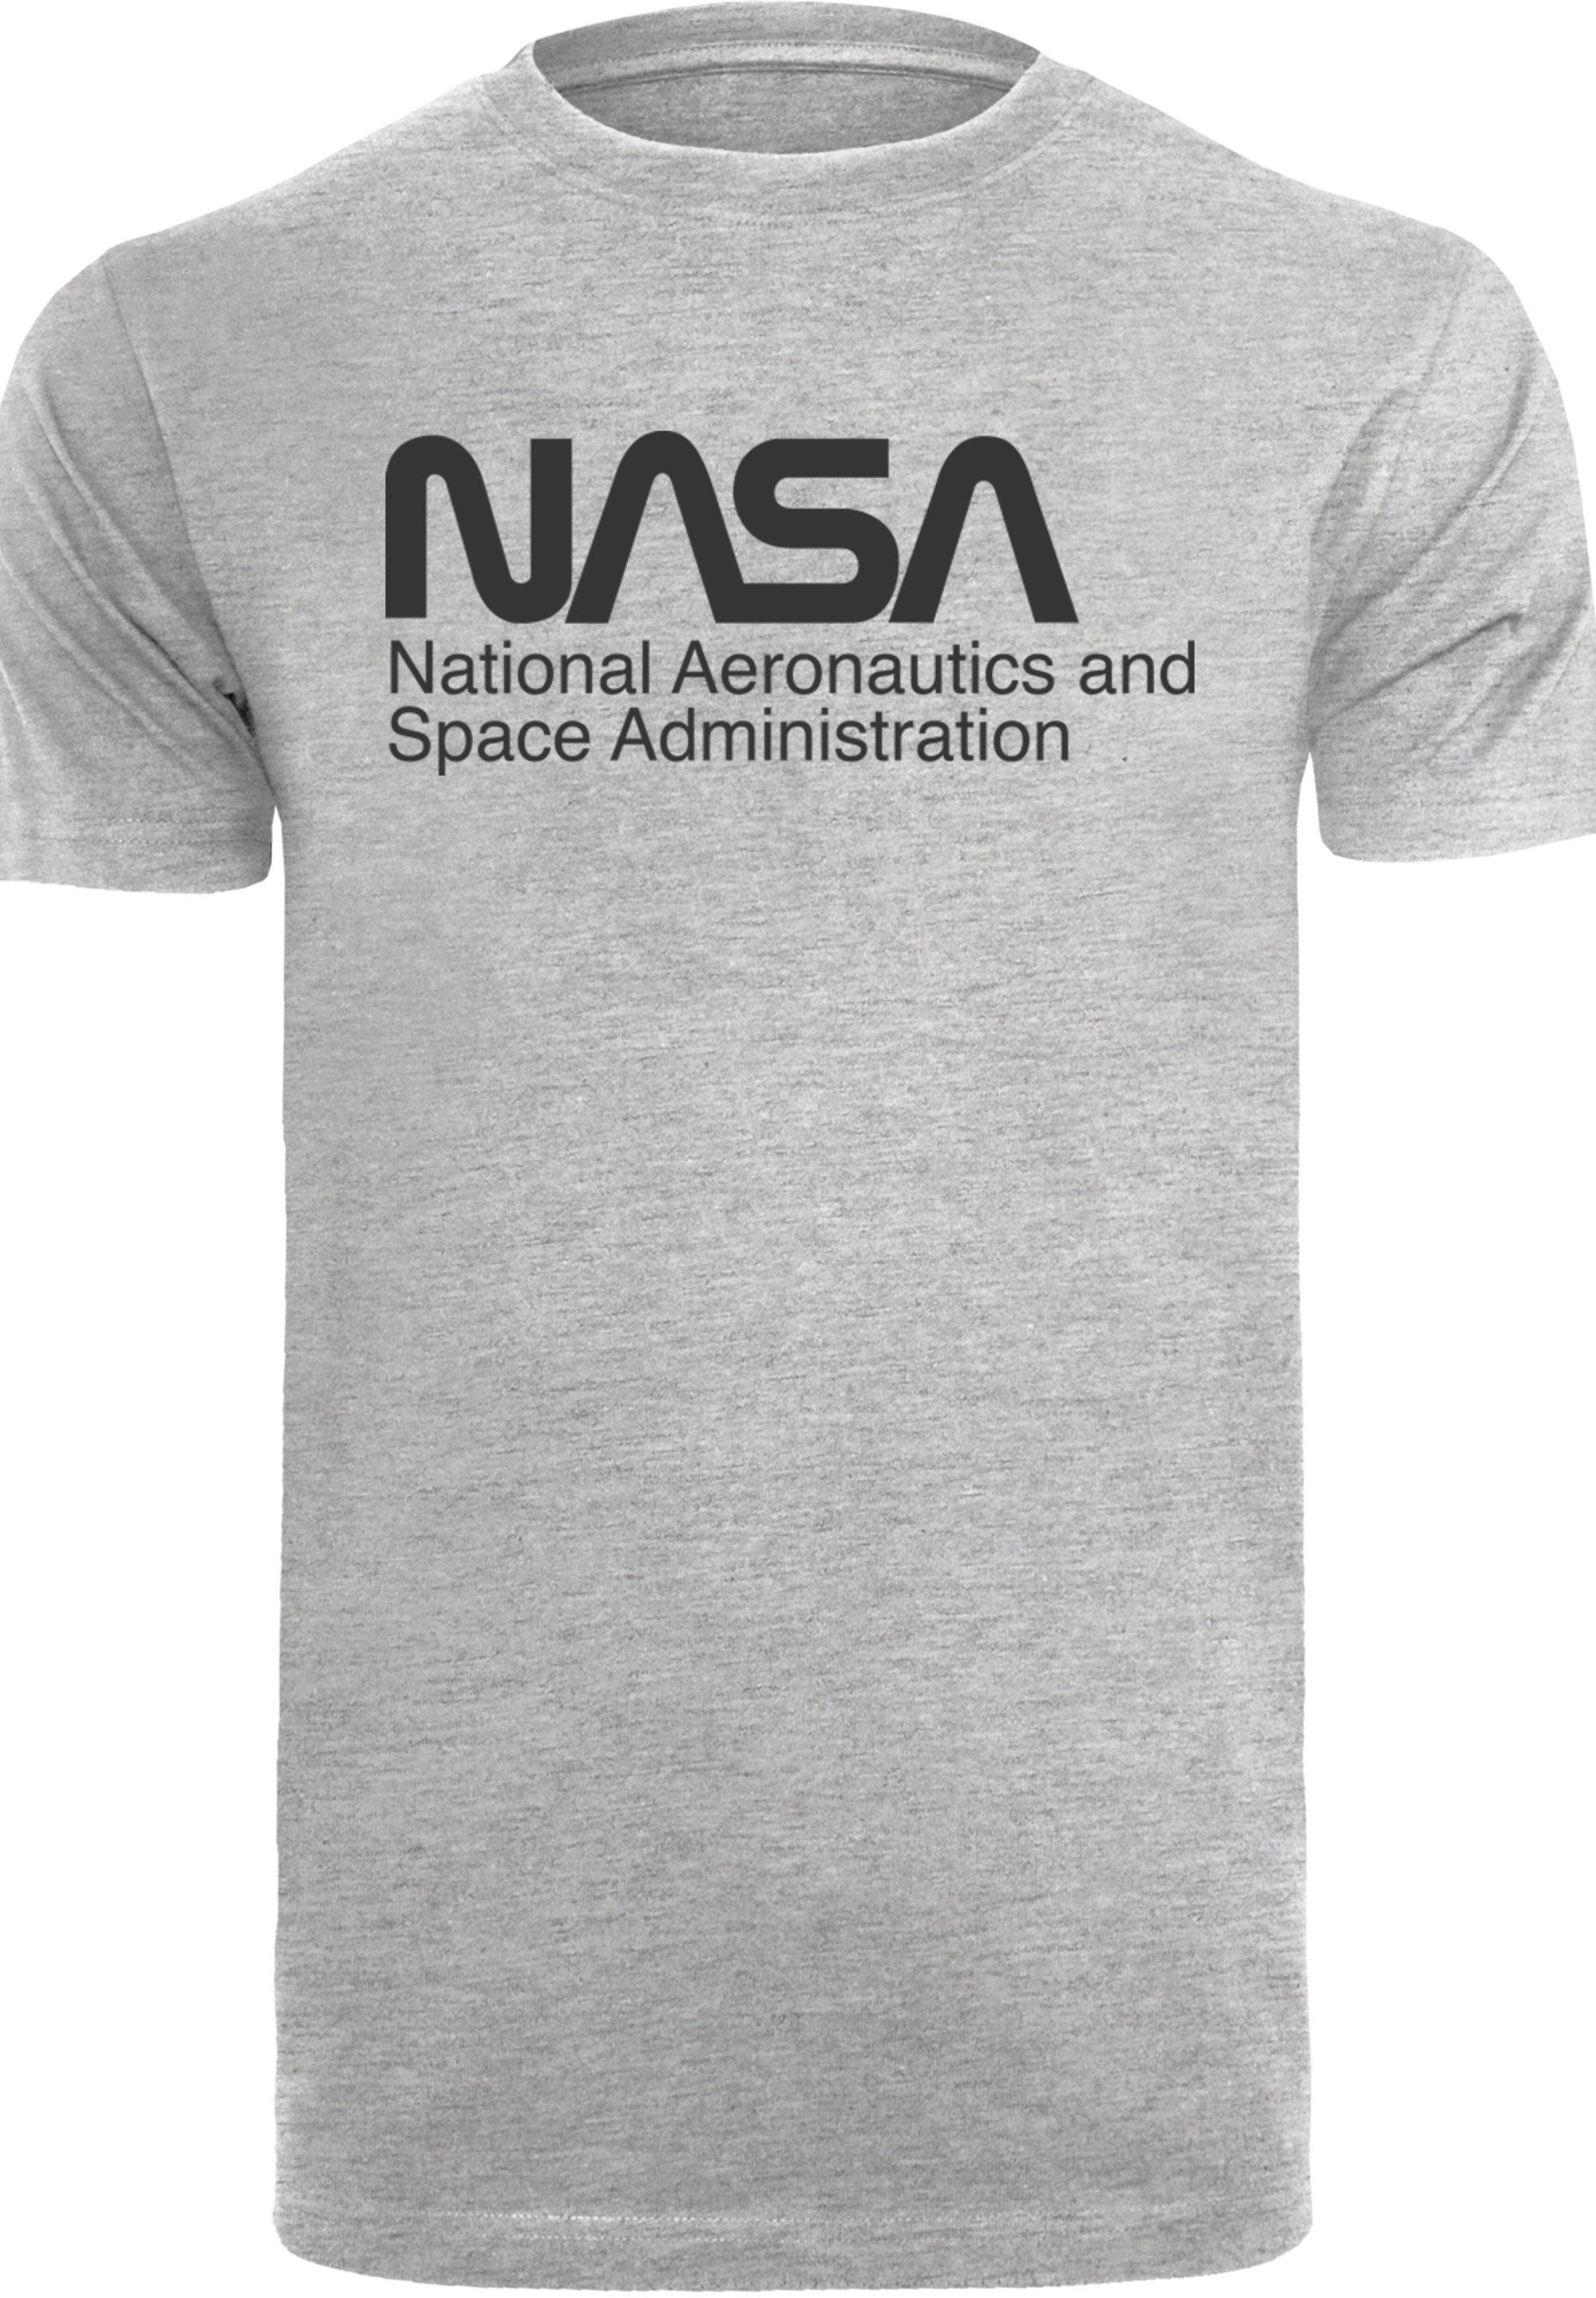 Print, hohem weicher One Tone F4NT4STIC Logo T-Shirt Baumwollstoff Tragekomfort Sehr NASA mit